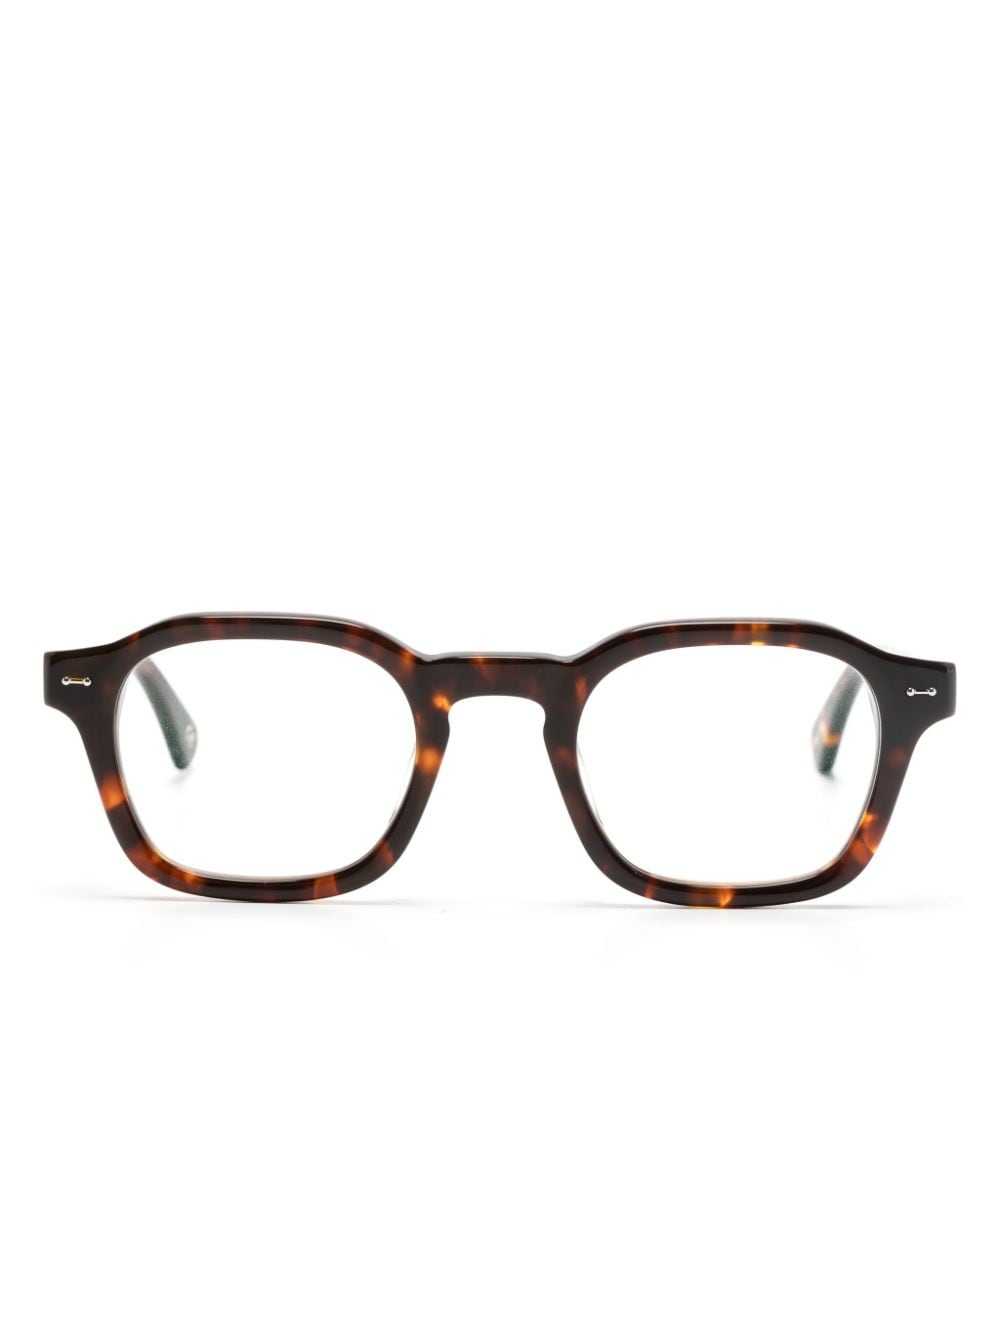 peter & may walk lunettes de vue hero à monture carrée - marron